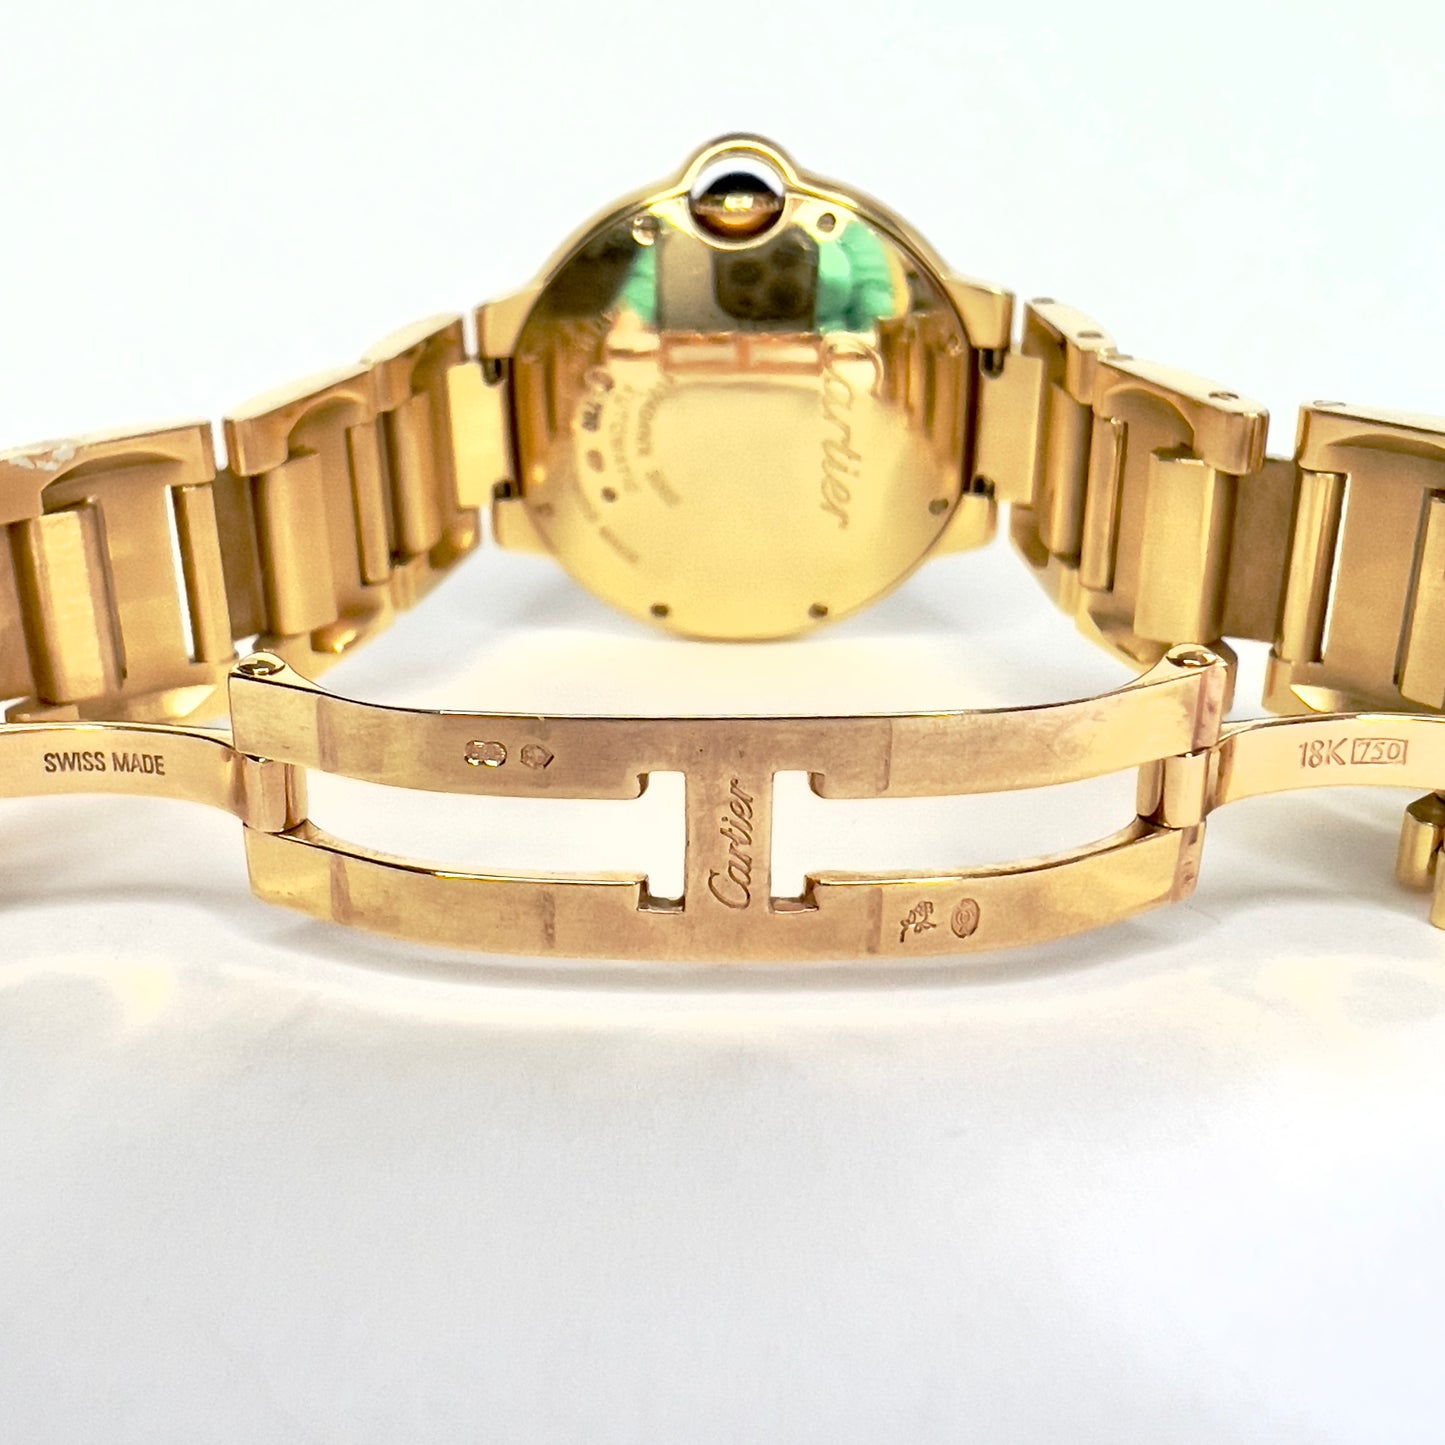 CARTIER BALLON BLEU 36mm Automatic 18K Yellow Gold Watch